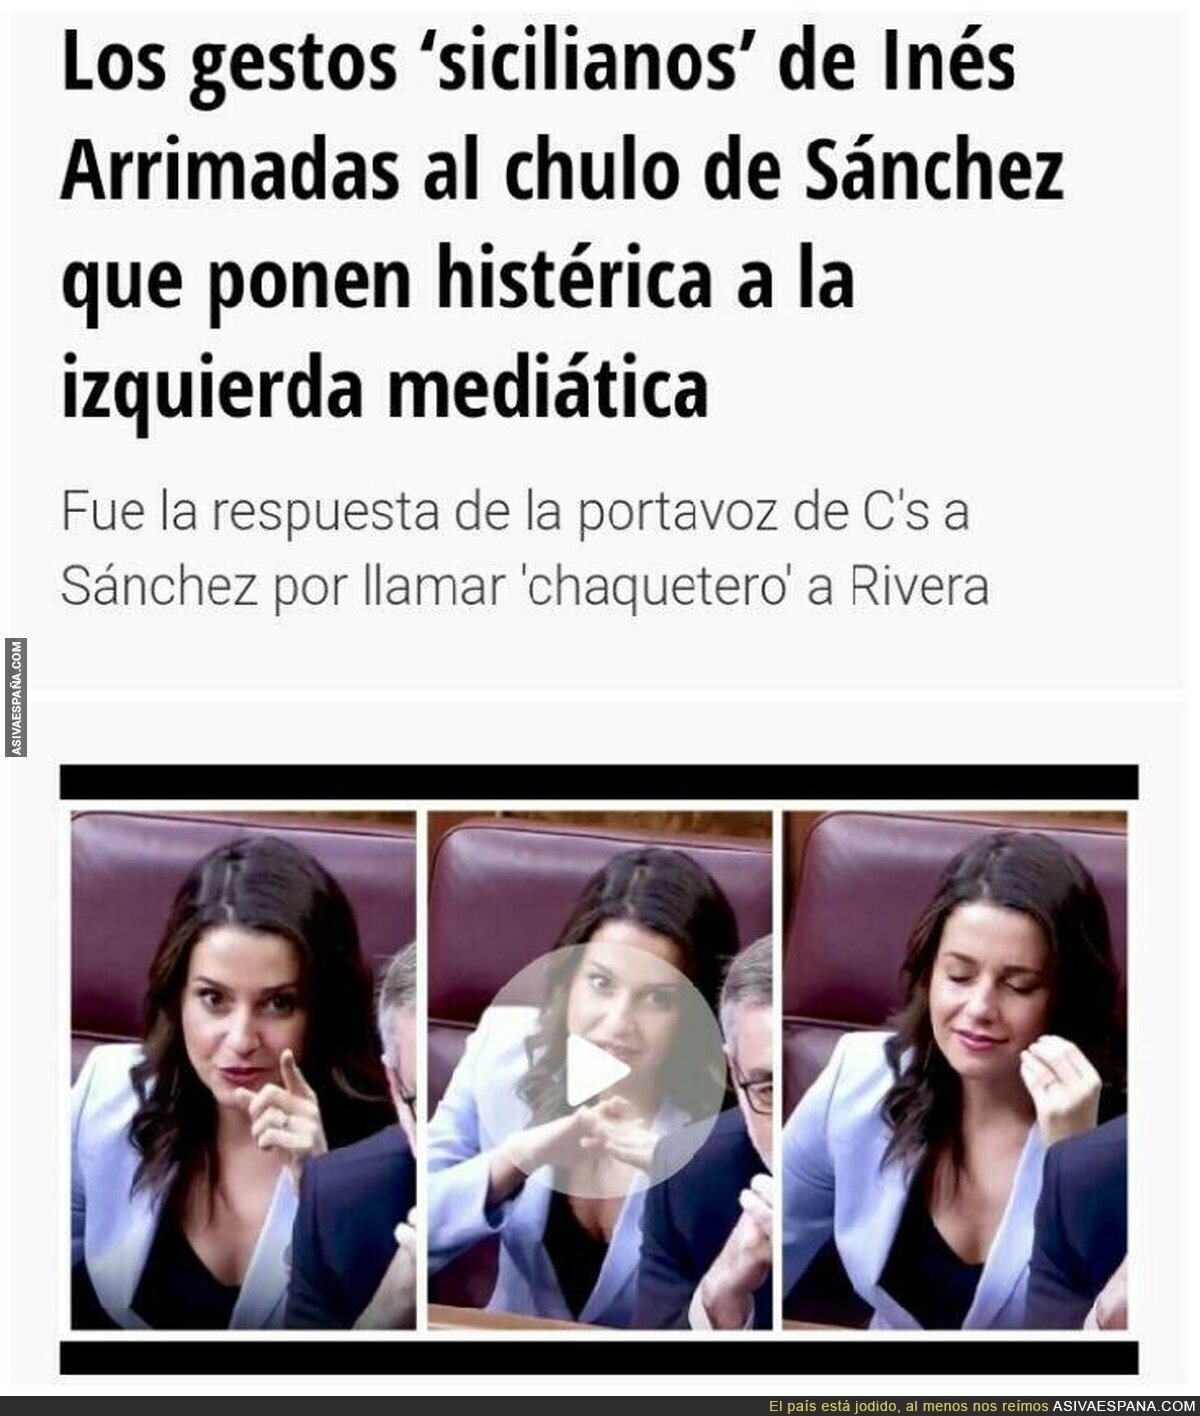 En Periodista Digital lo intentan, pero no les sale. ¡Comparan sin querer a Inés Arrimadas con una Mafiosa Siciliana!